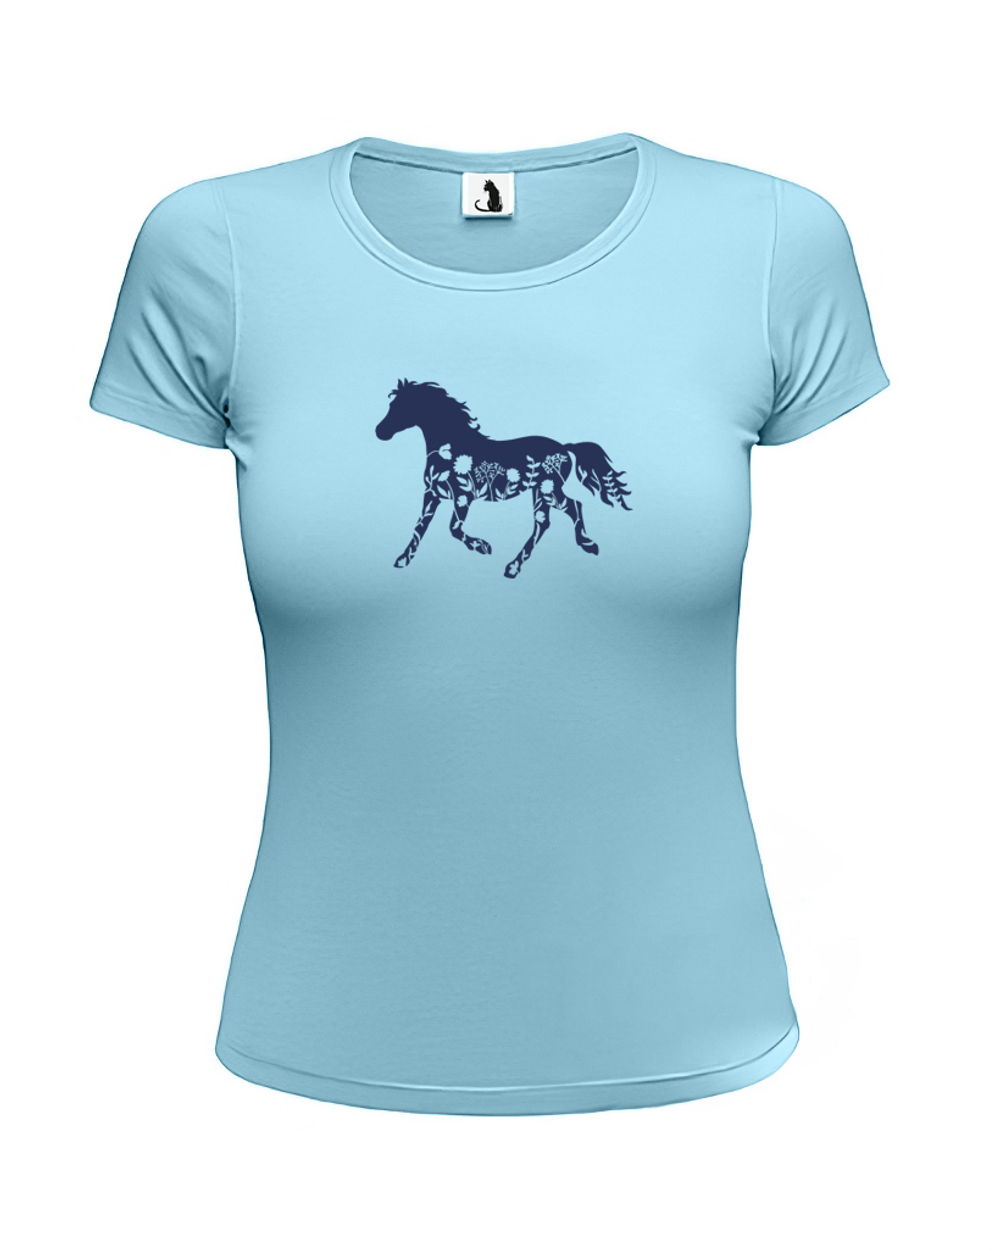 Футболка с лошадью и цветами женская приталенная голубая с синим рисунком